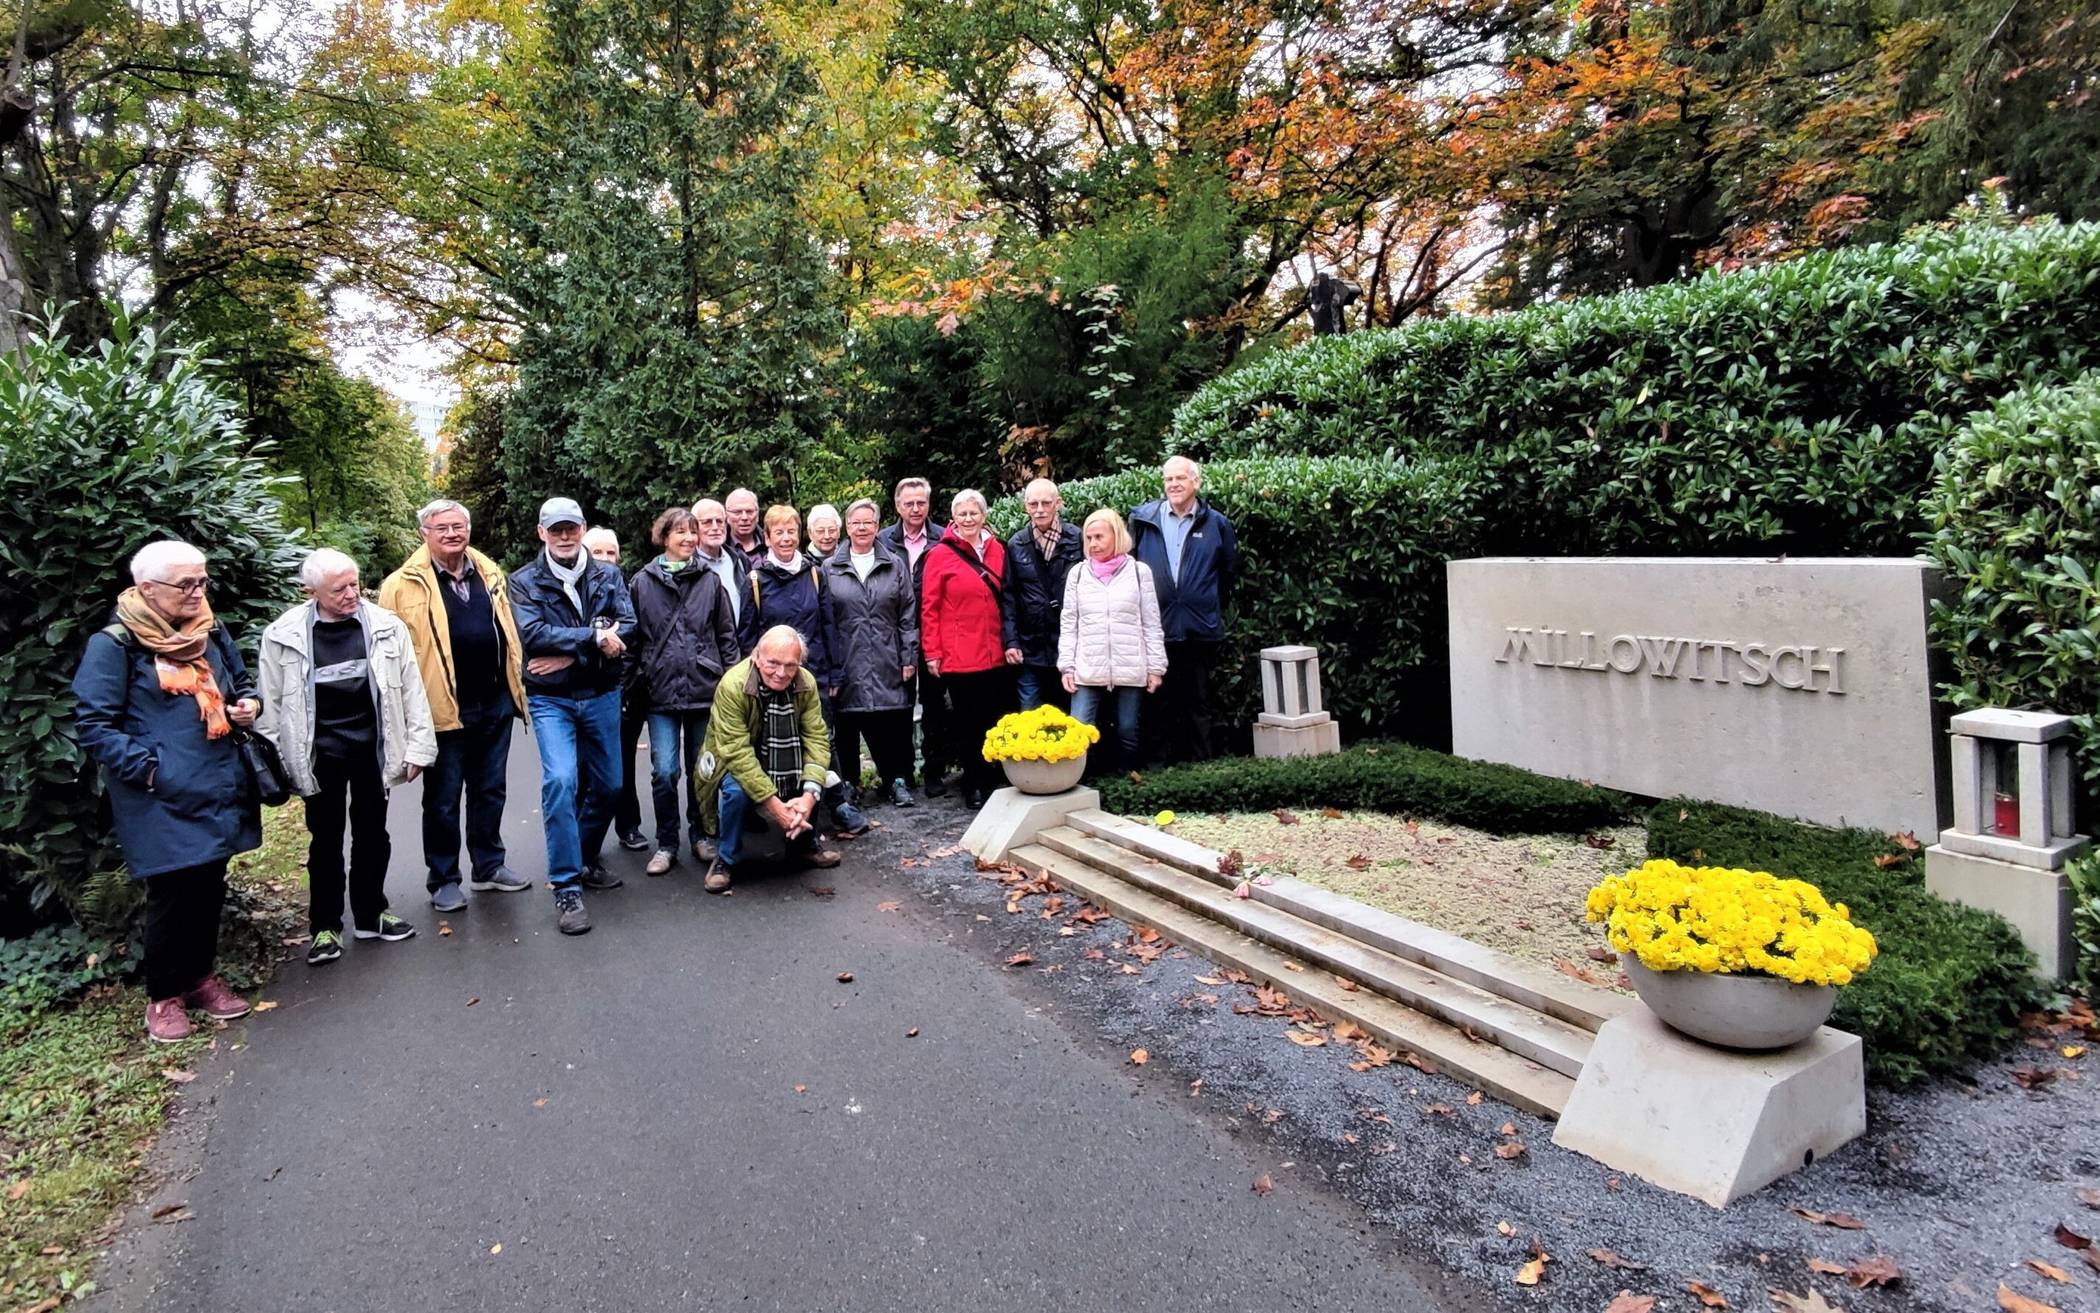  Eines der Highlights der vergangenen Monate: Mitglieder der Spee-Akademie auf dem Kölner Prominentenfriedhof Melaten vor dem Grab von Willy Millowitsch. 